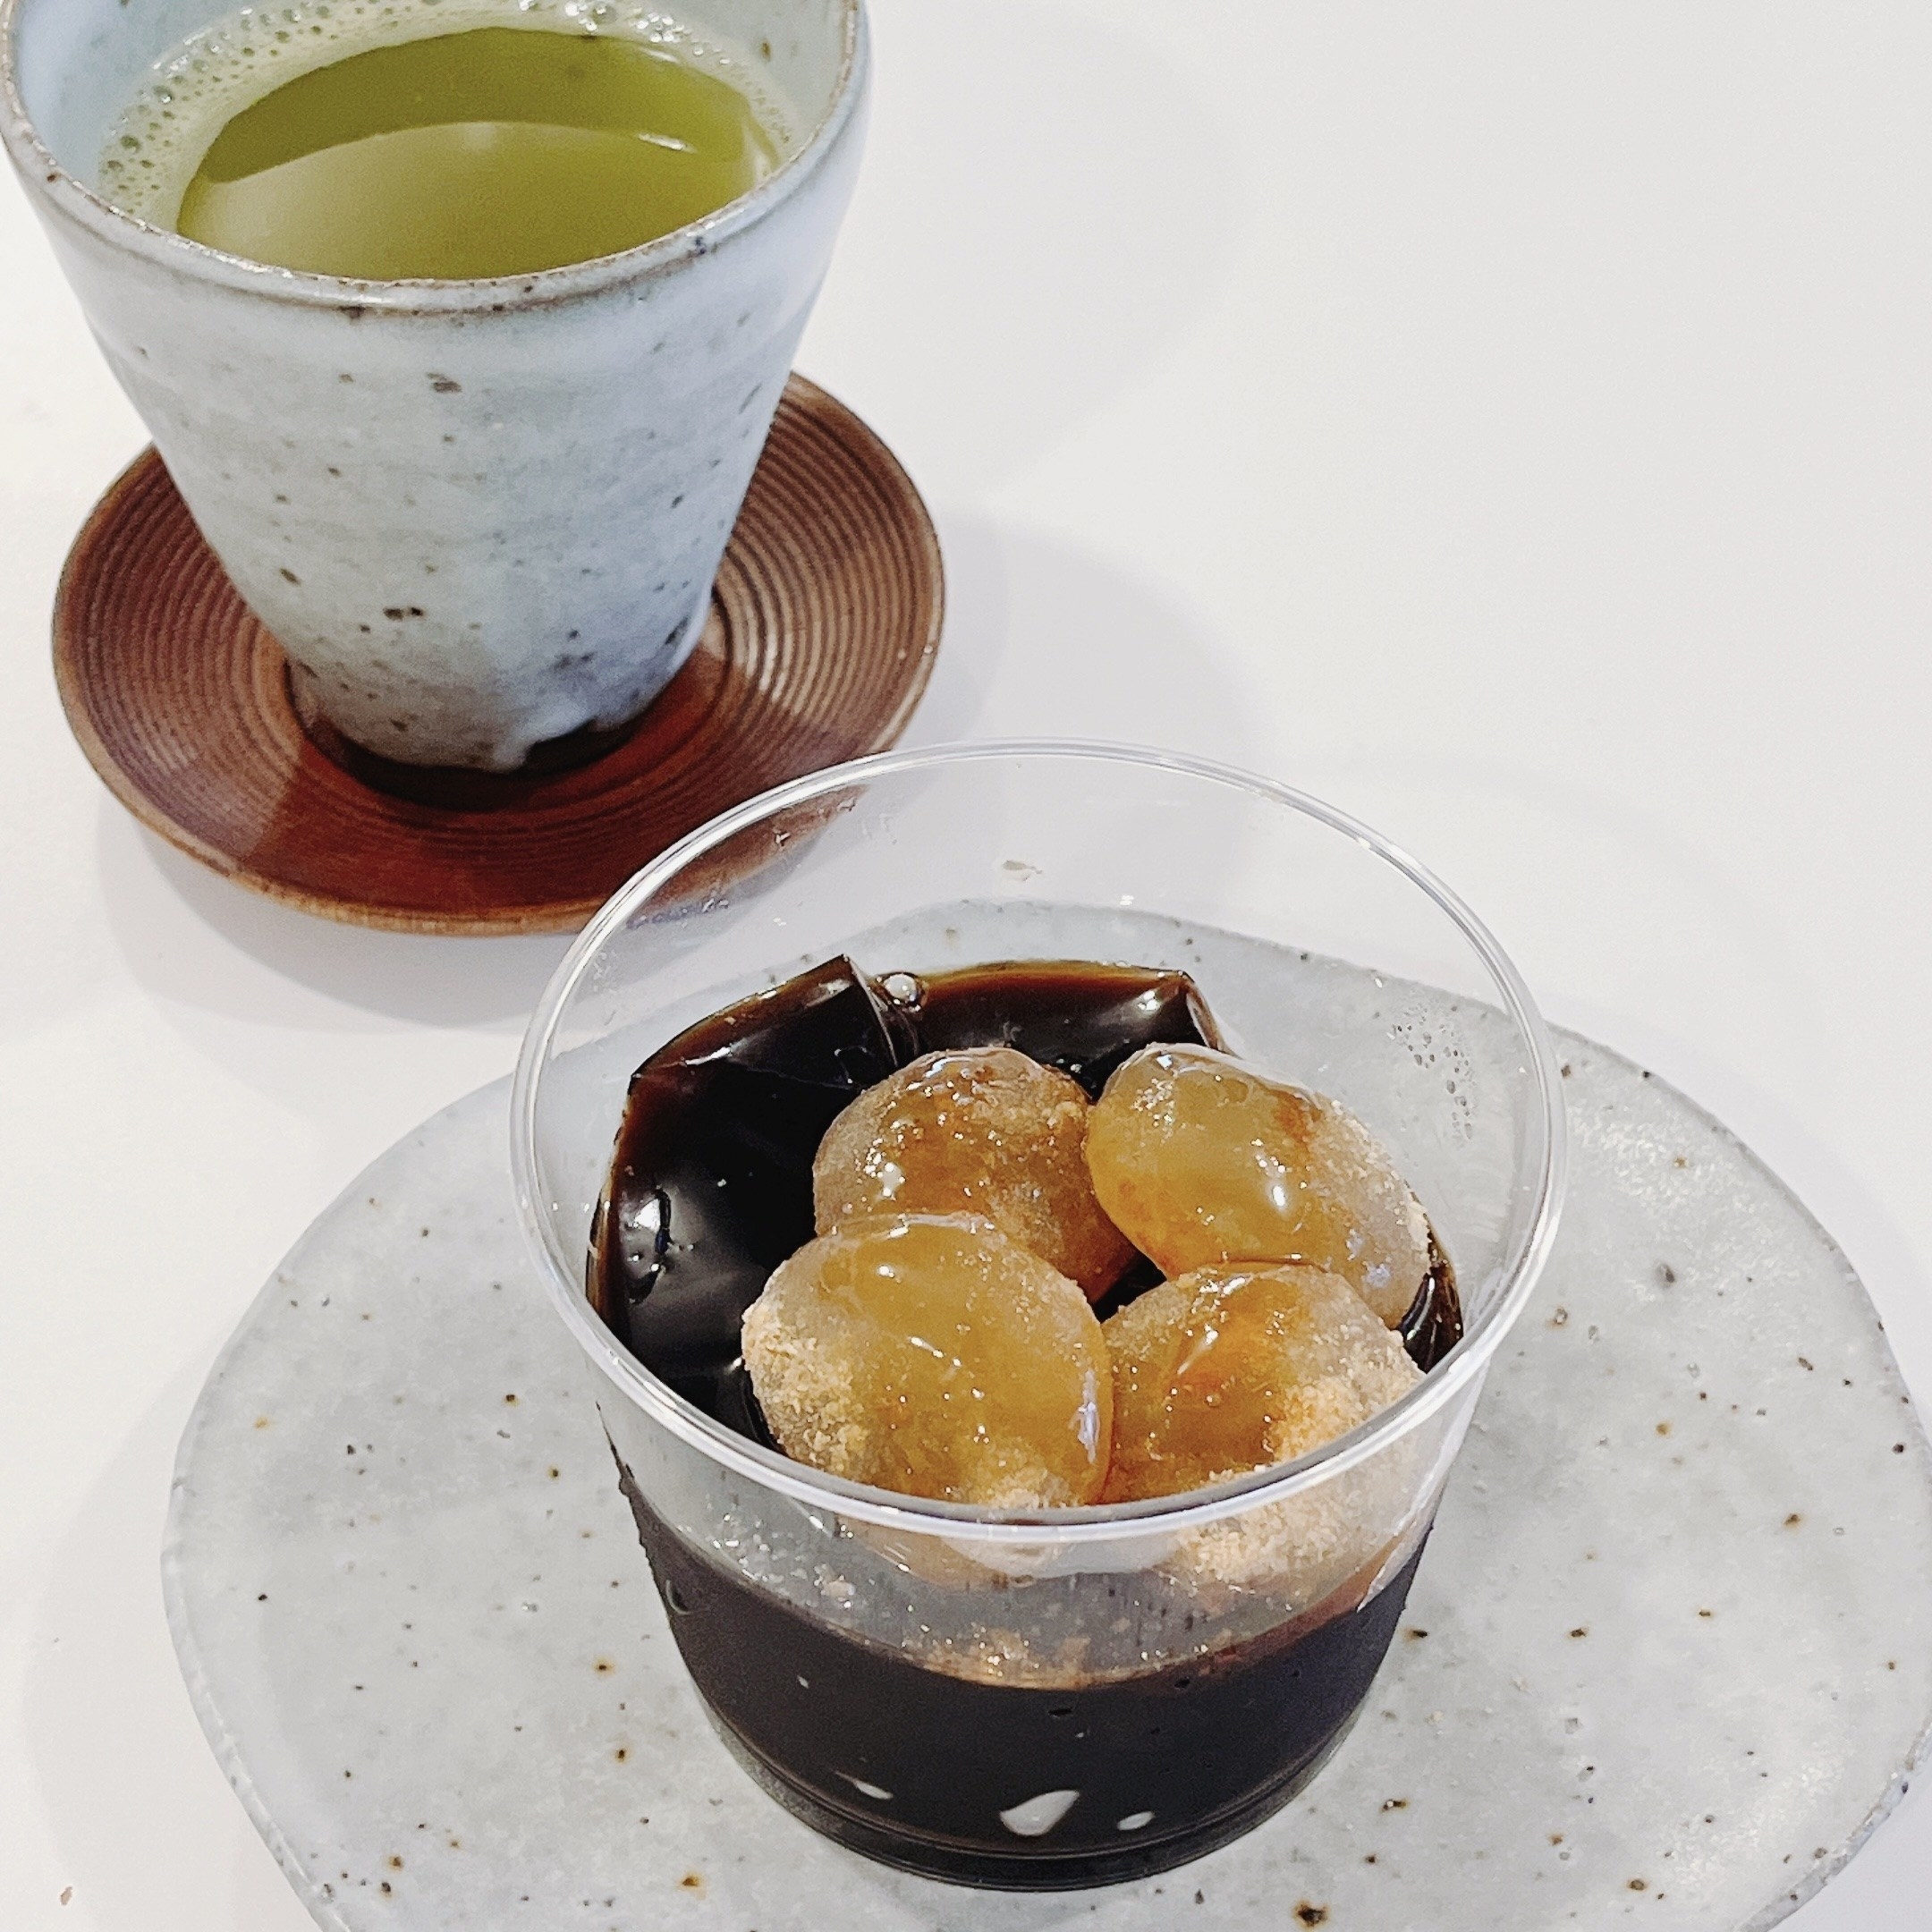 成城石井のオススメのメニュー「沖縄県産黒糖使用の黒蜜で食べる黒糖ゼリーわらび餅のせ」